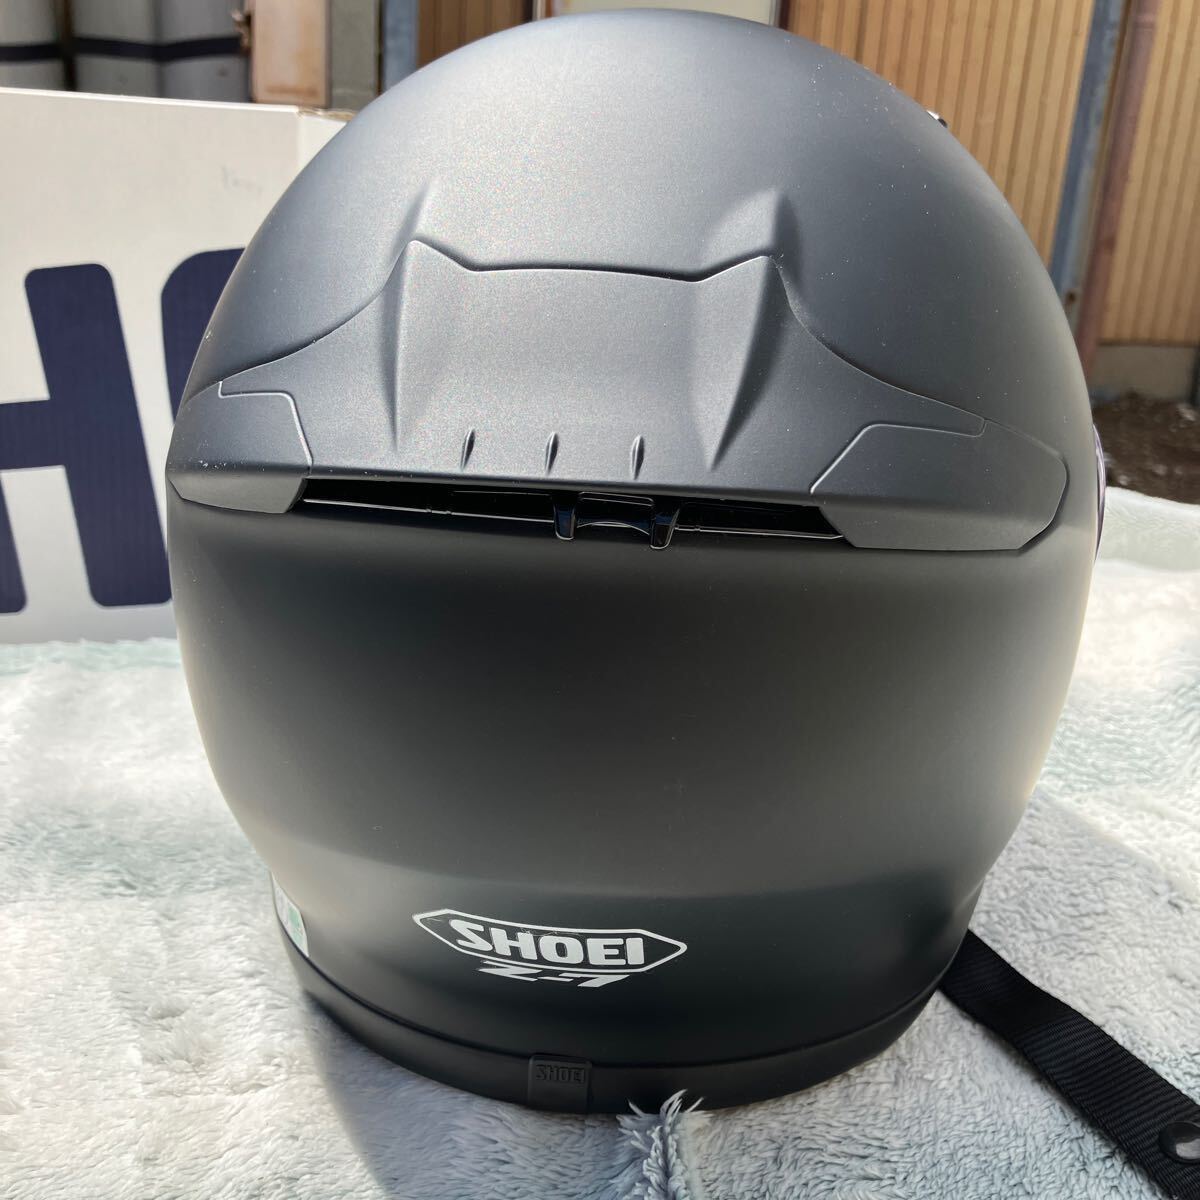 SHOEI Z-7 L размер full-face шлем матовый черный защита имеется 2016 год производства прекрасный товар 